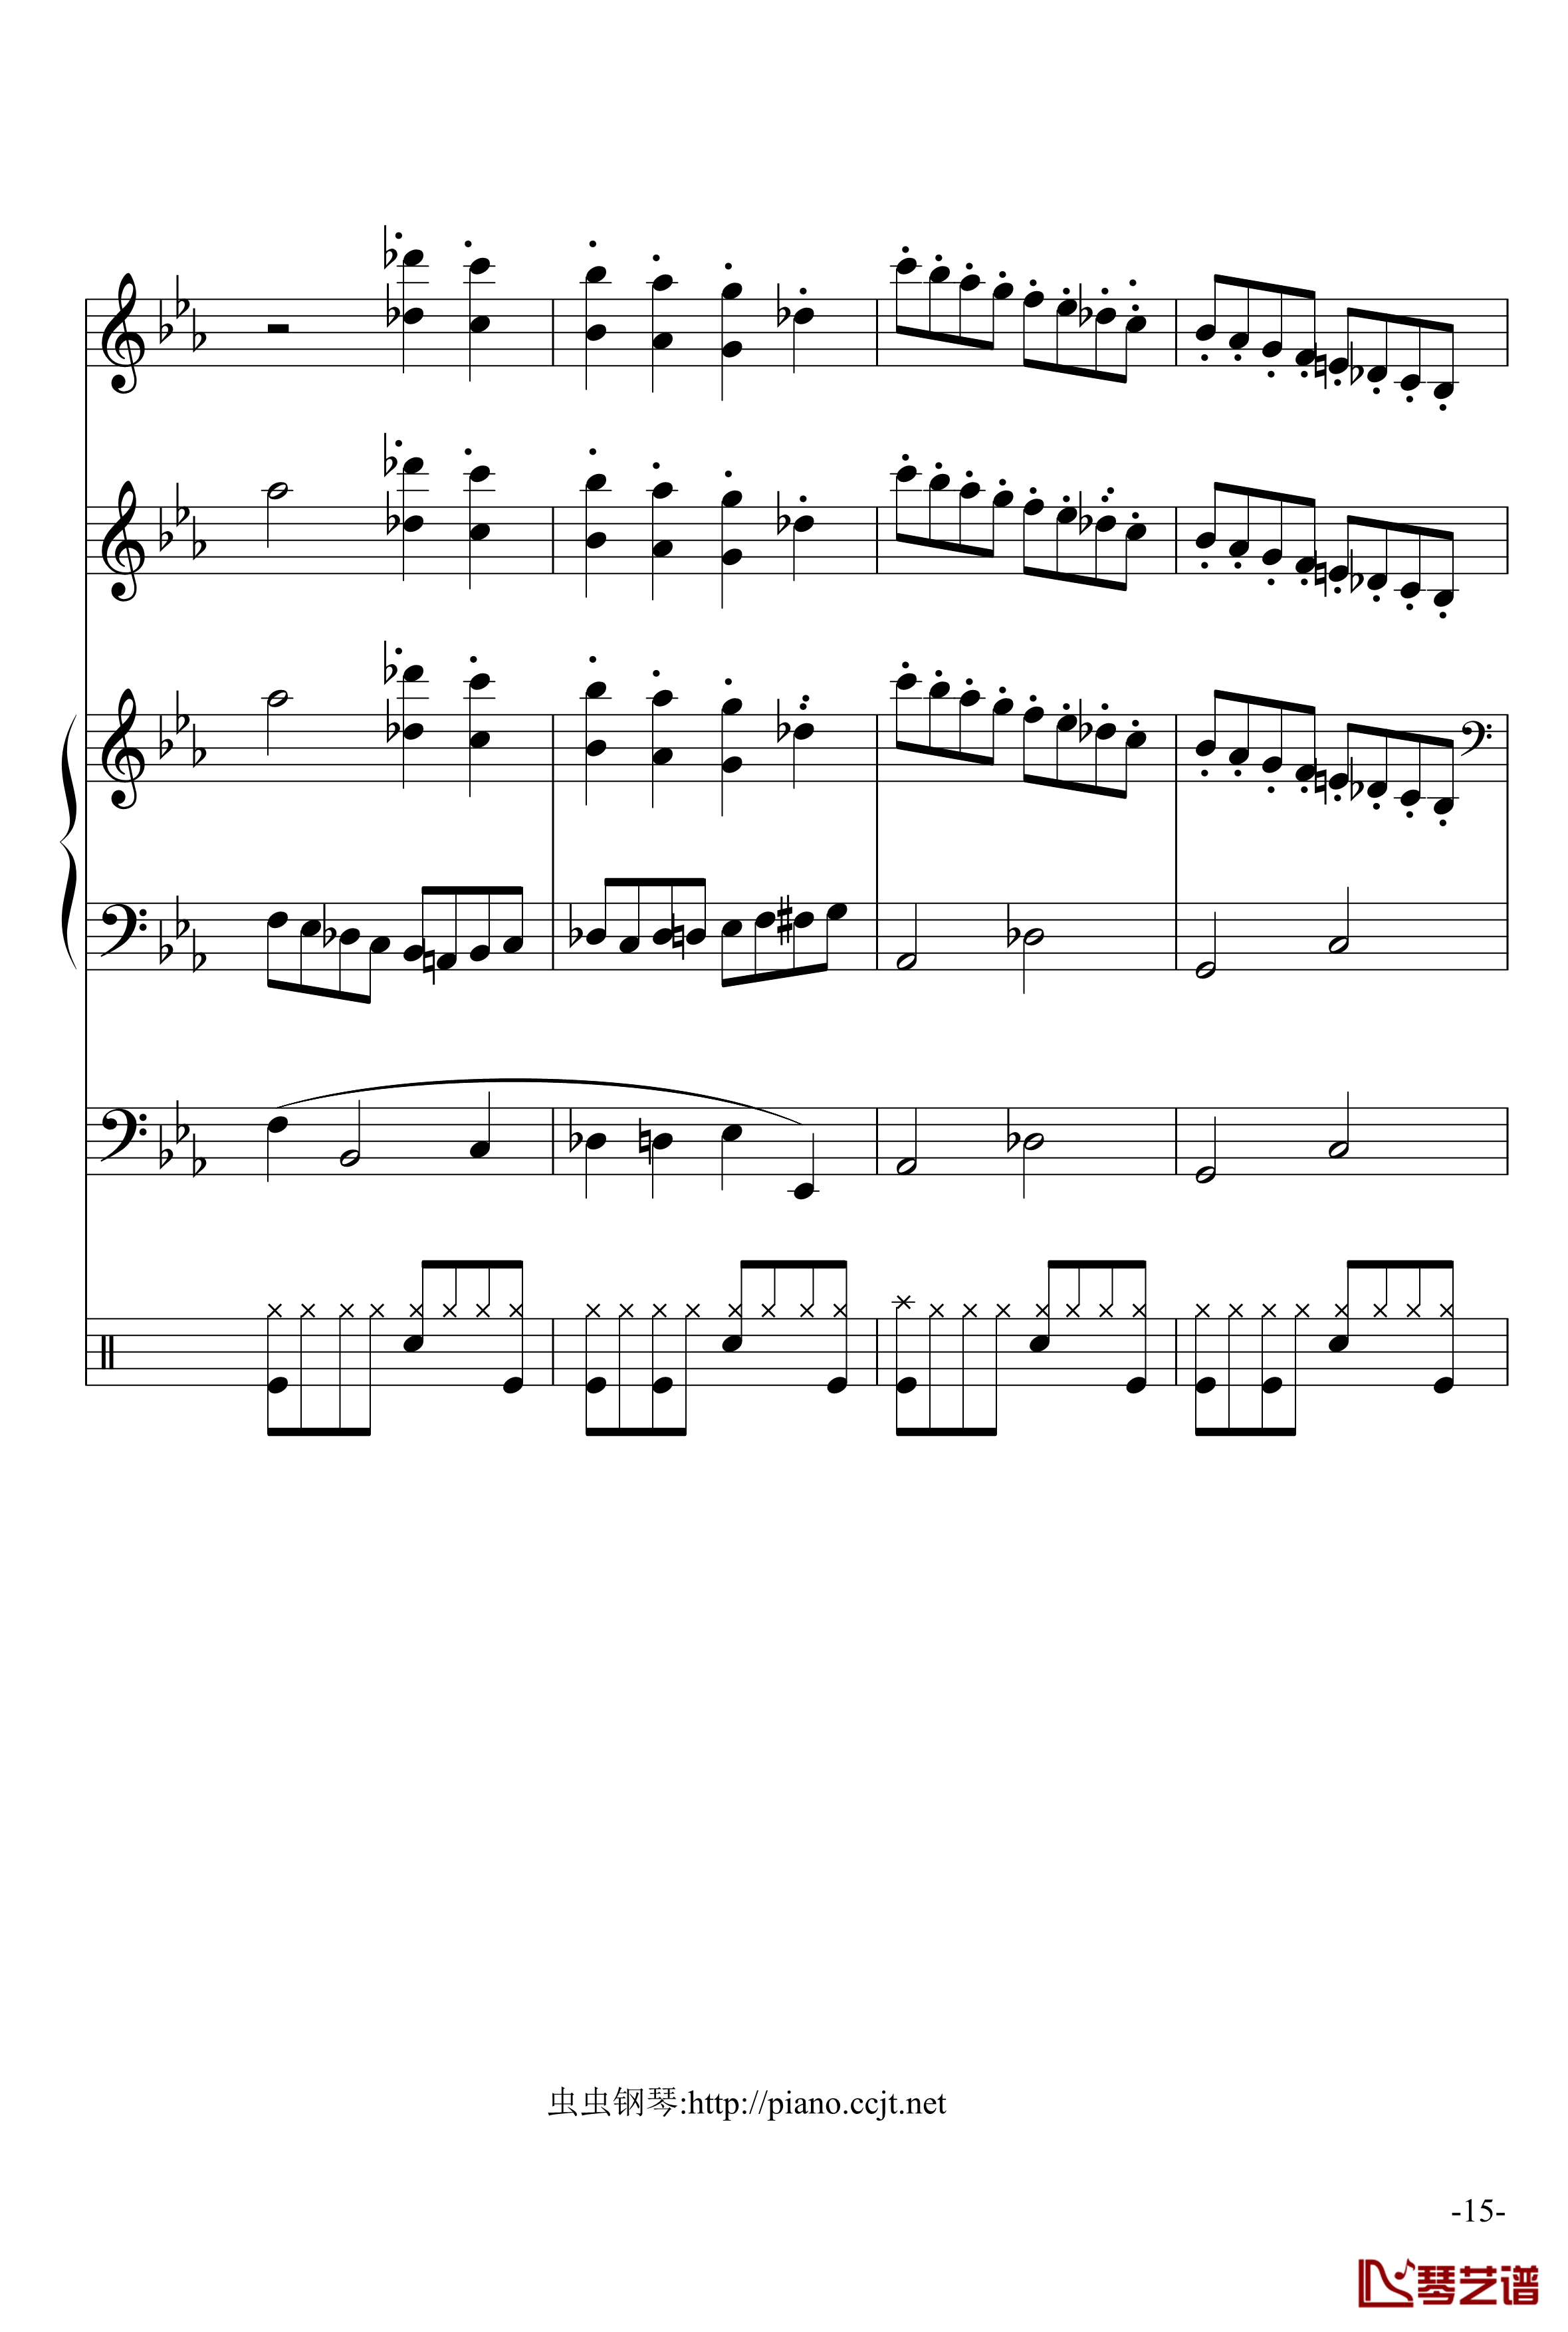 悲怆奏鸣曲钢琴谱-加小乐队-贝多芬-beethoven15